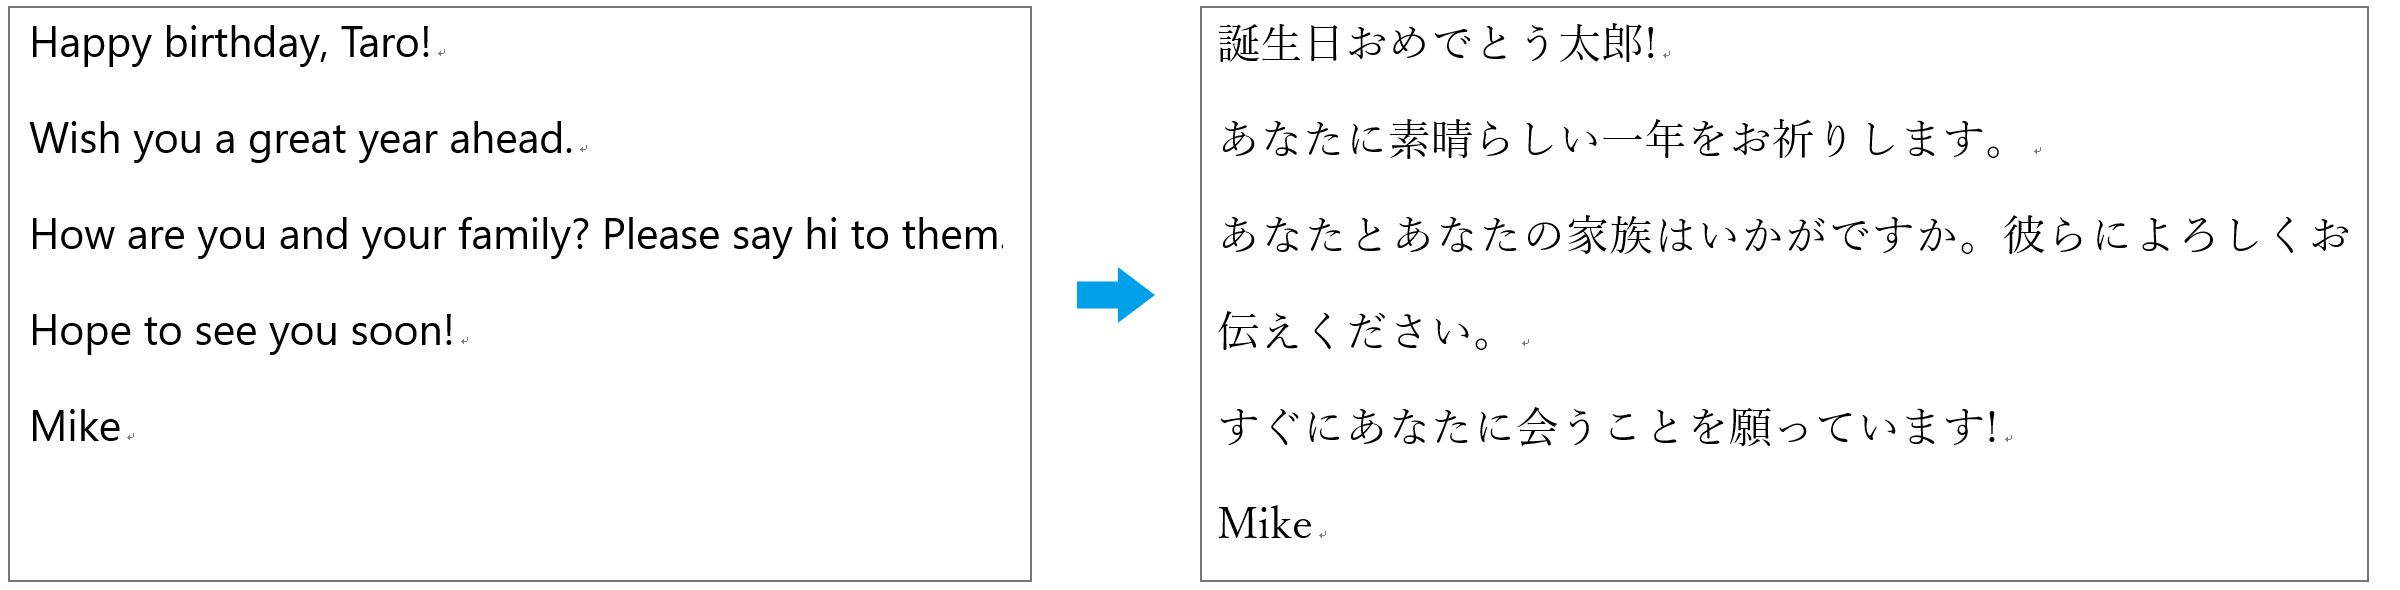 海外に住むお友達から英語で送られてきた文章を翻訳機能を使用して日本語に翻訳した画像です。